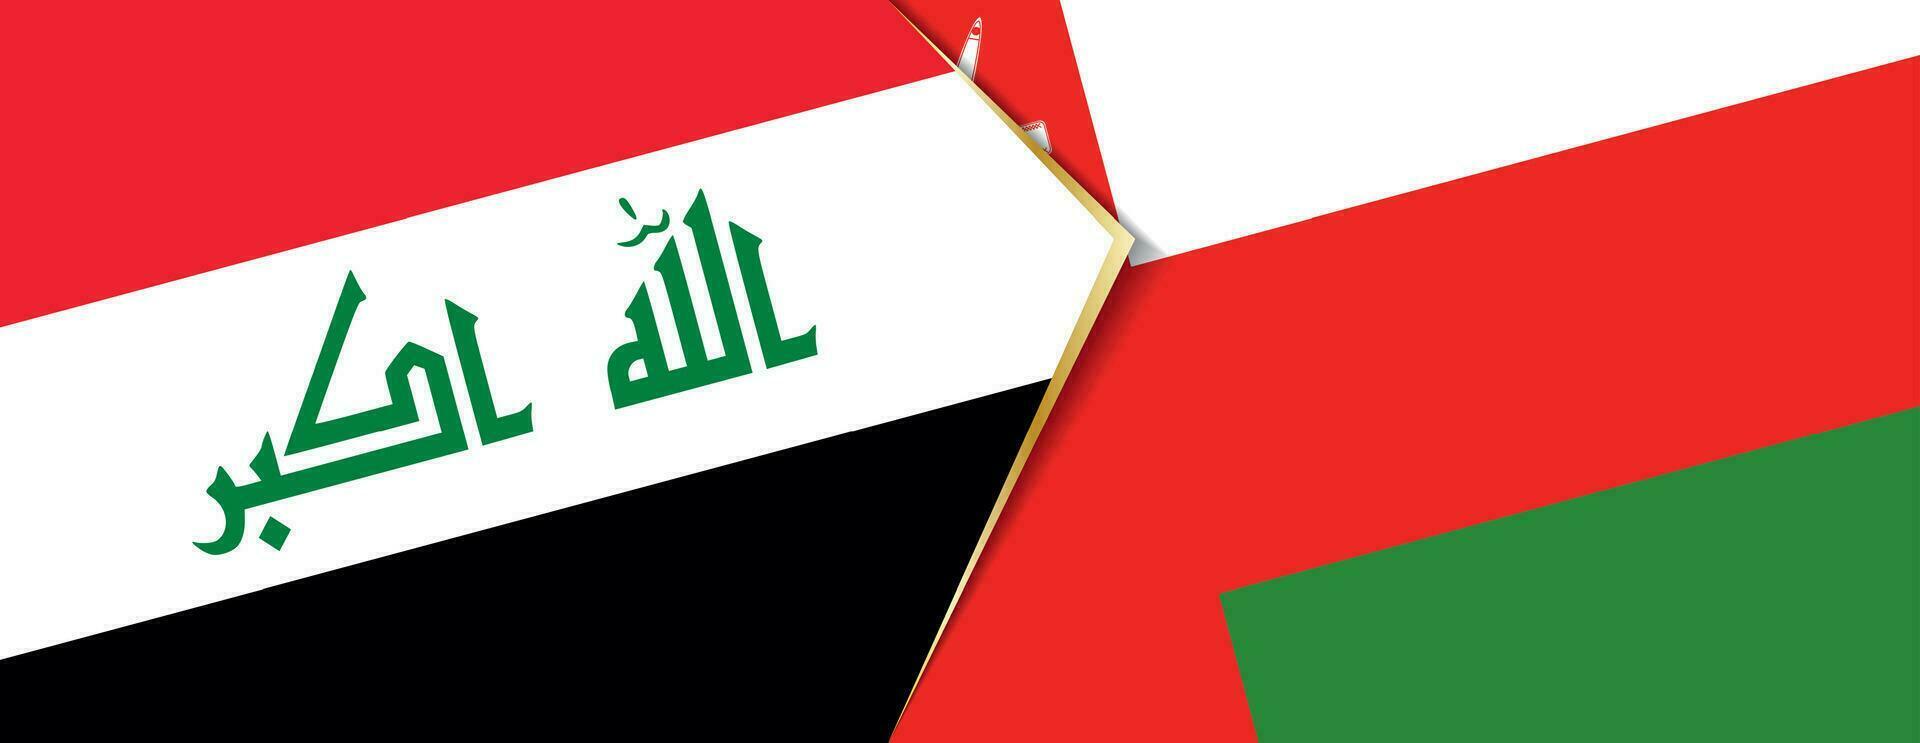 Irak et Oman drapeaux, deux vecteur drapeaux.